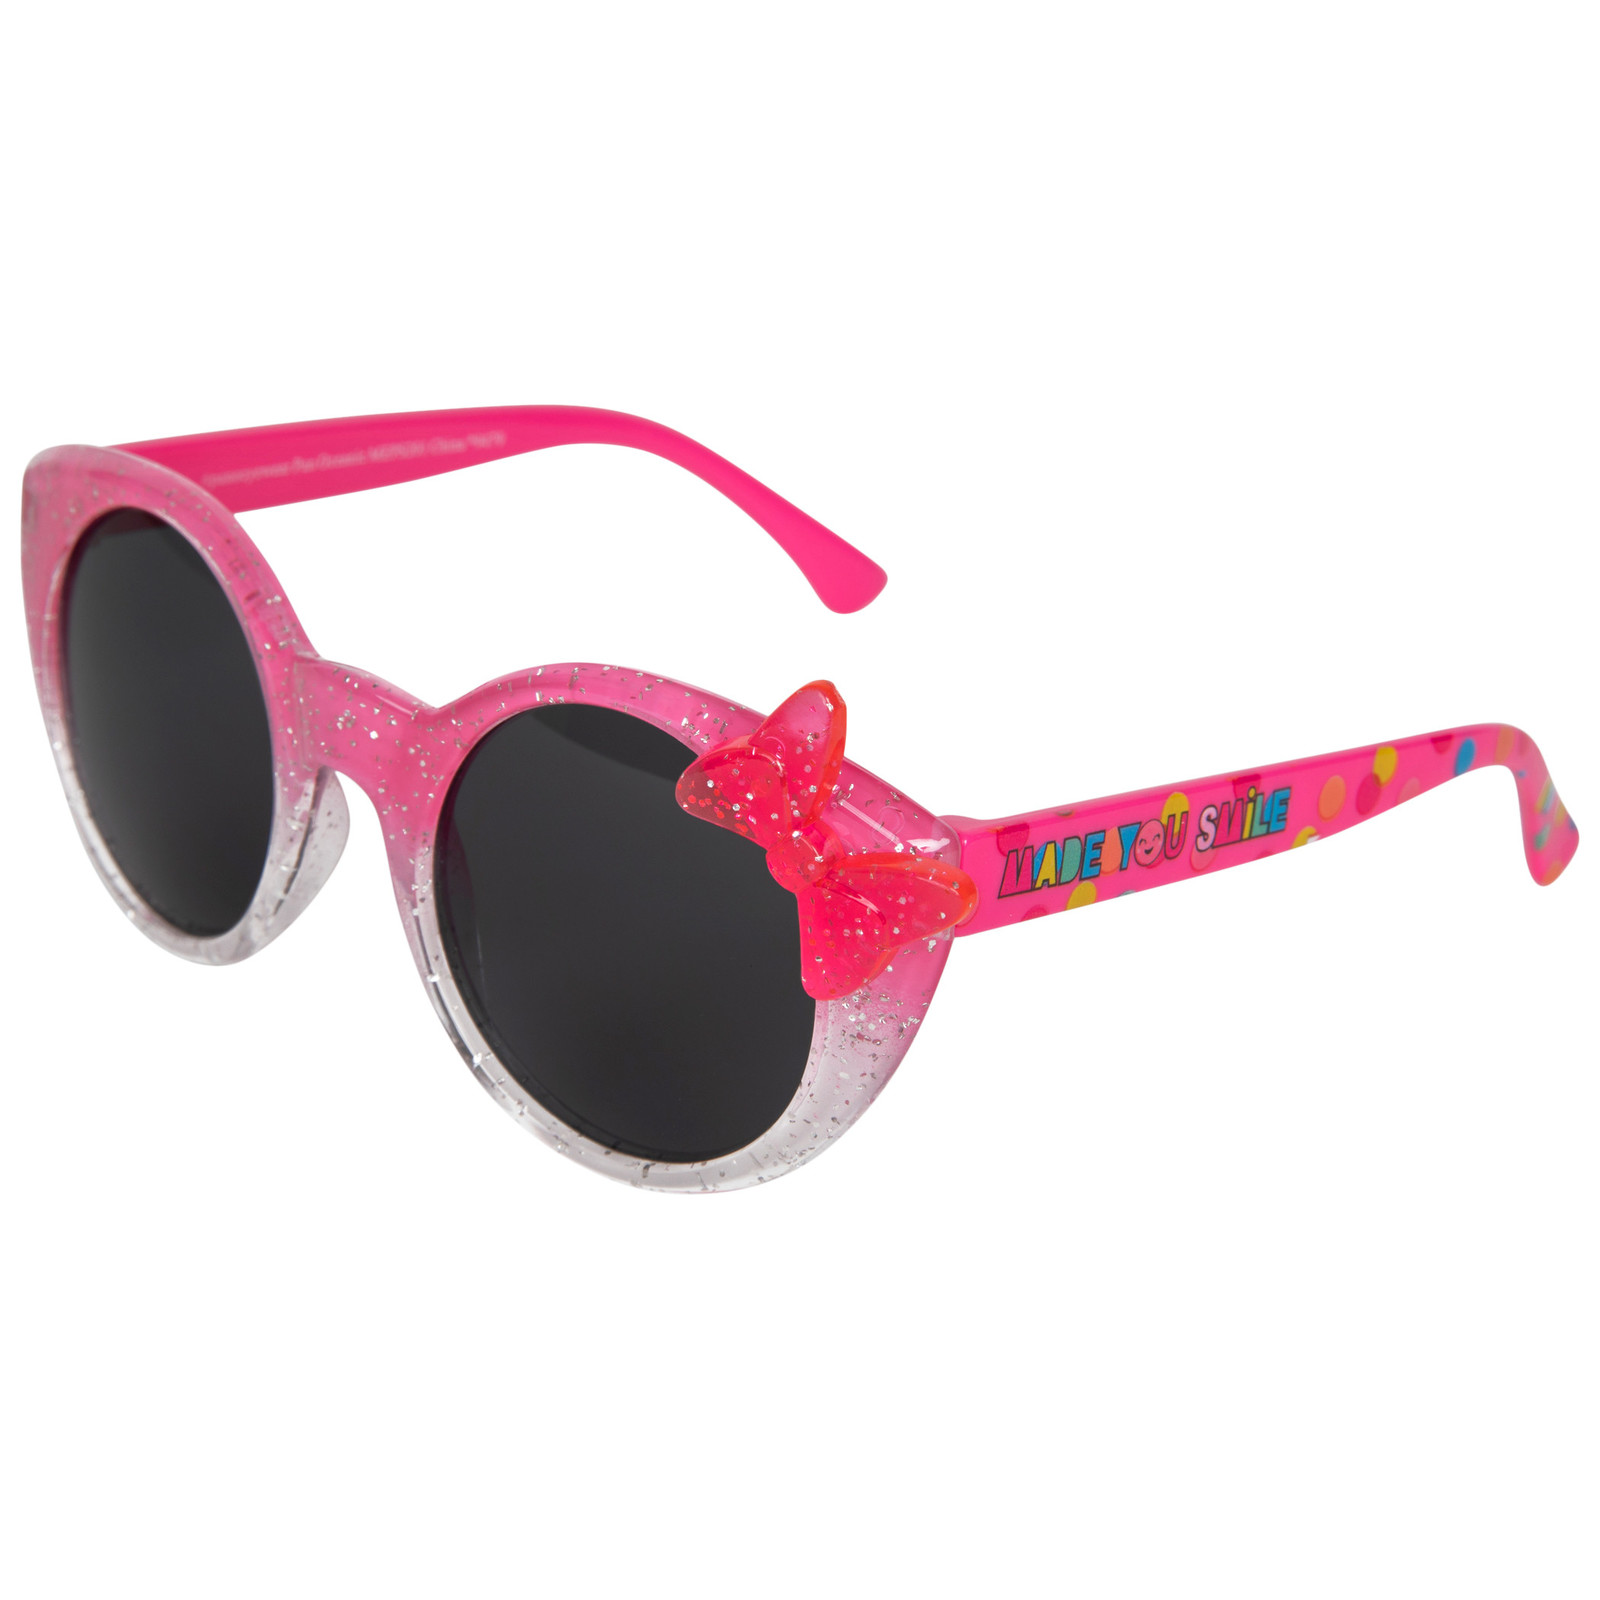 Disney Minnie Mouse Oh So Happy Girls Sunglasses w/ Pom Pom Pouch Set Pink - $19.98